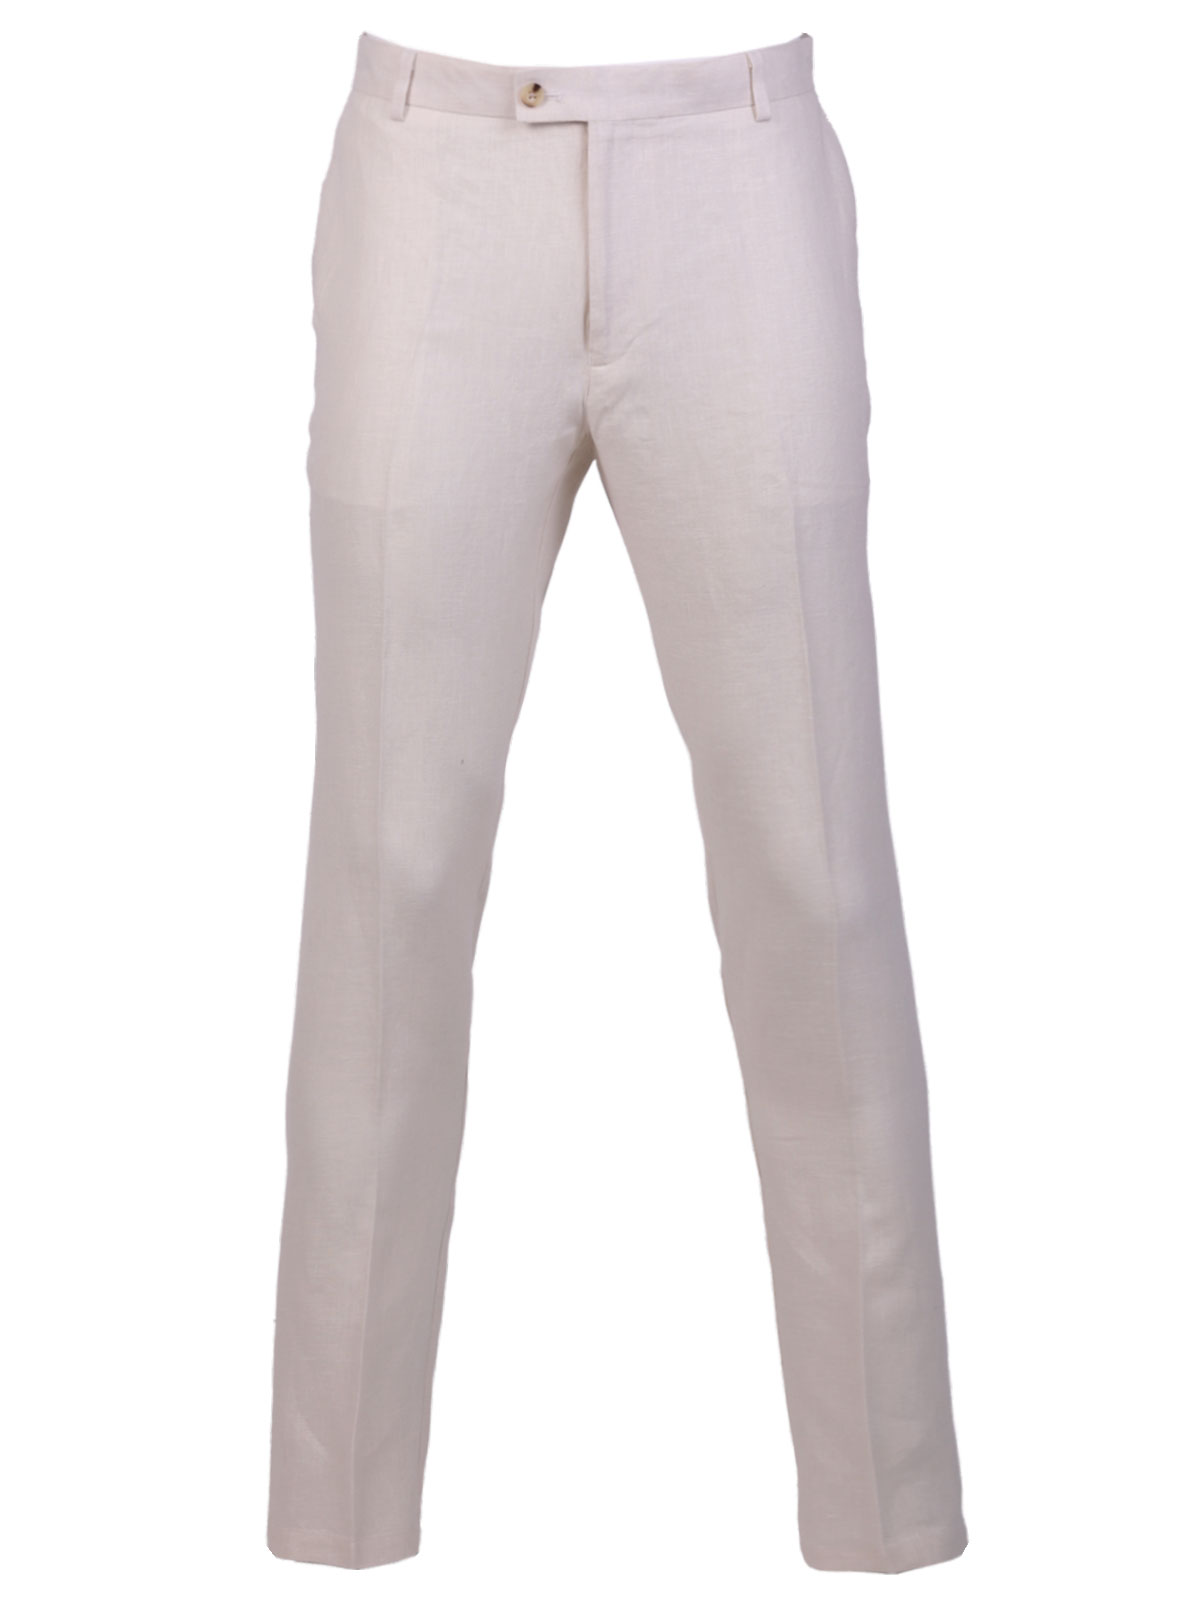 Ανδρικό λινό κοστούμι σε λευκό χρώμα - 68078 € 199.10 img3